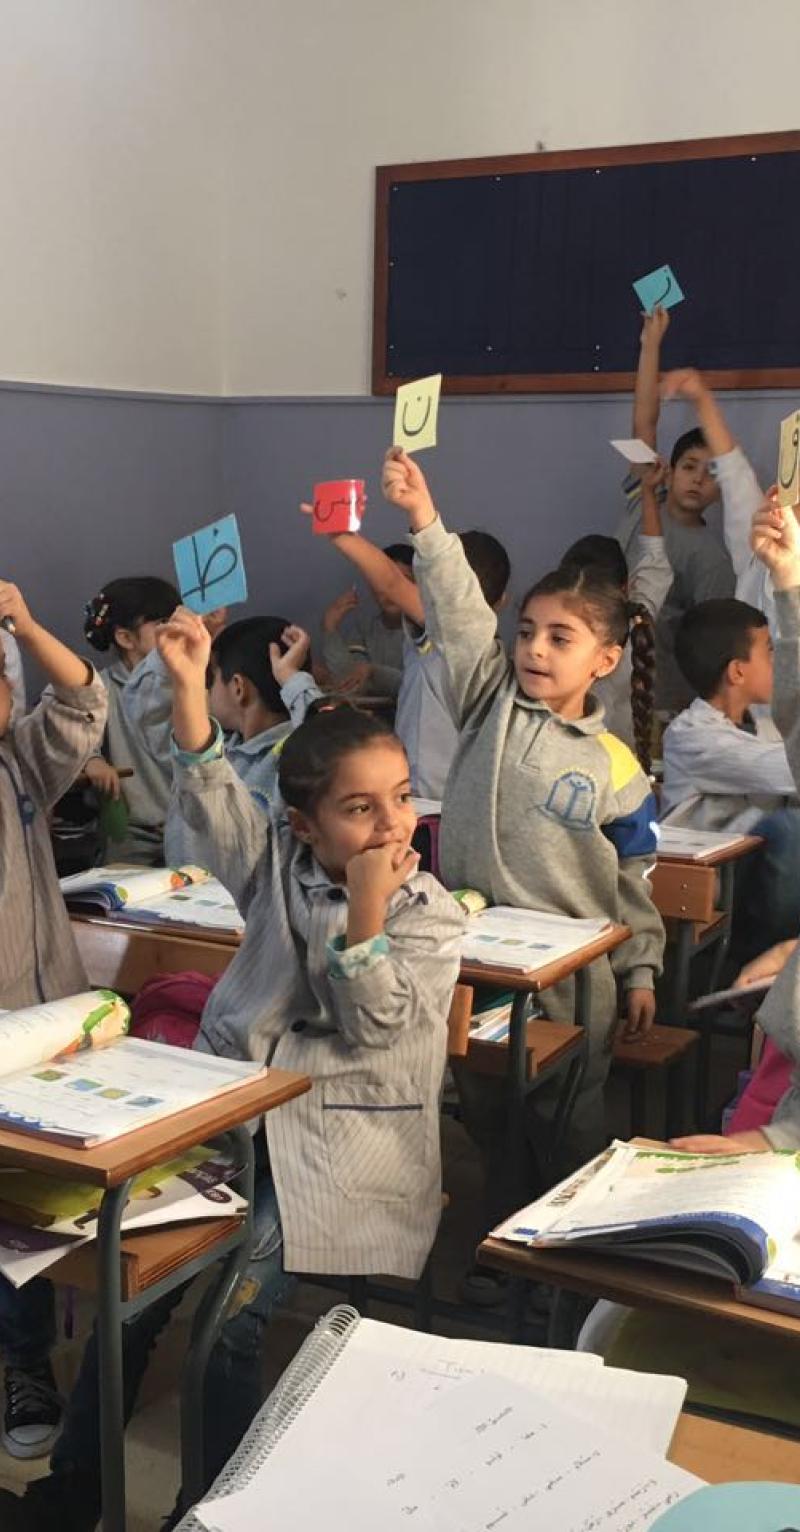 Niños pequeños con uniformes escolares llenan un aula, sentados en filas. Los libros están abiertos en sus escritorios. Los estudiantes levantan tarjetas de colores, cada una con una letra del alfabeto árabe. Algunos están sentados, mientras que el resto está de pie con las manos levantadas.